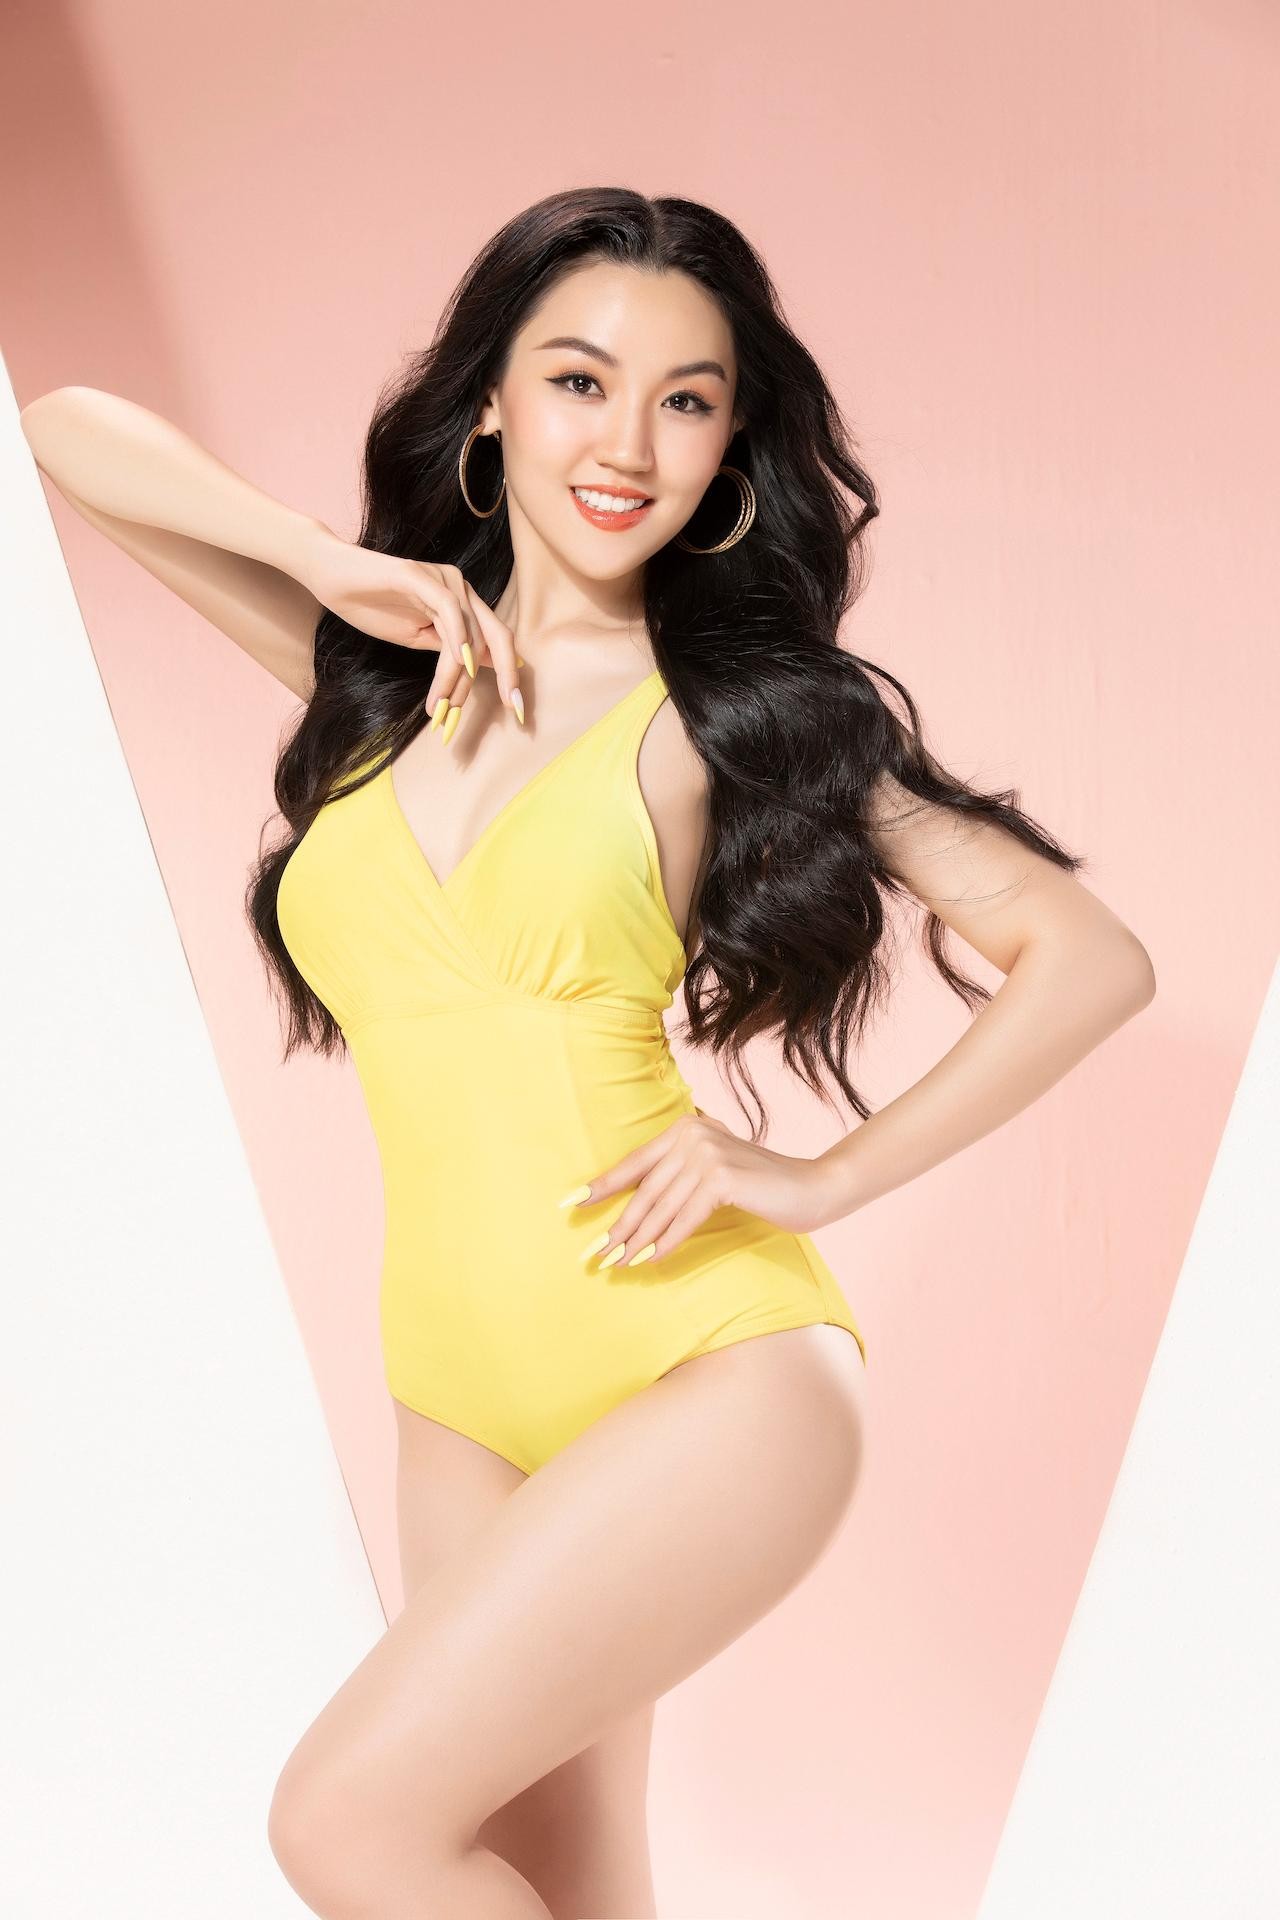 Ảnh áo tắm của 35 thí sinh Hoa hậu Việt Nam - Ảnh 29.